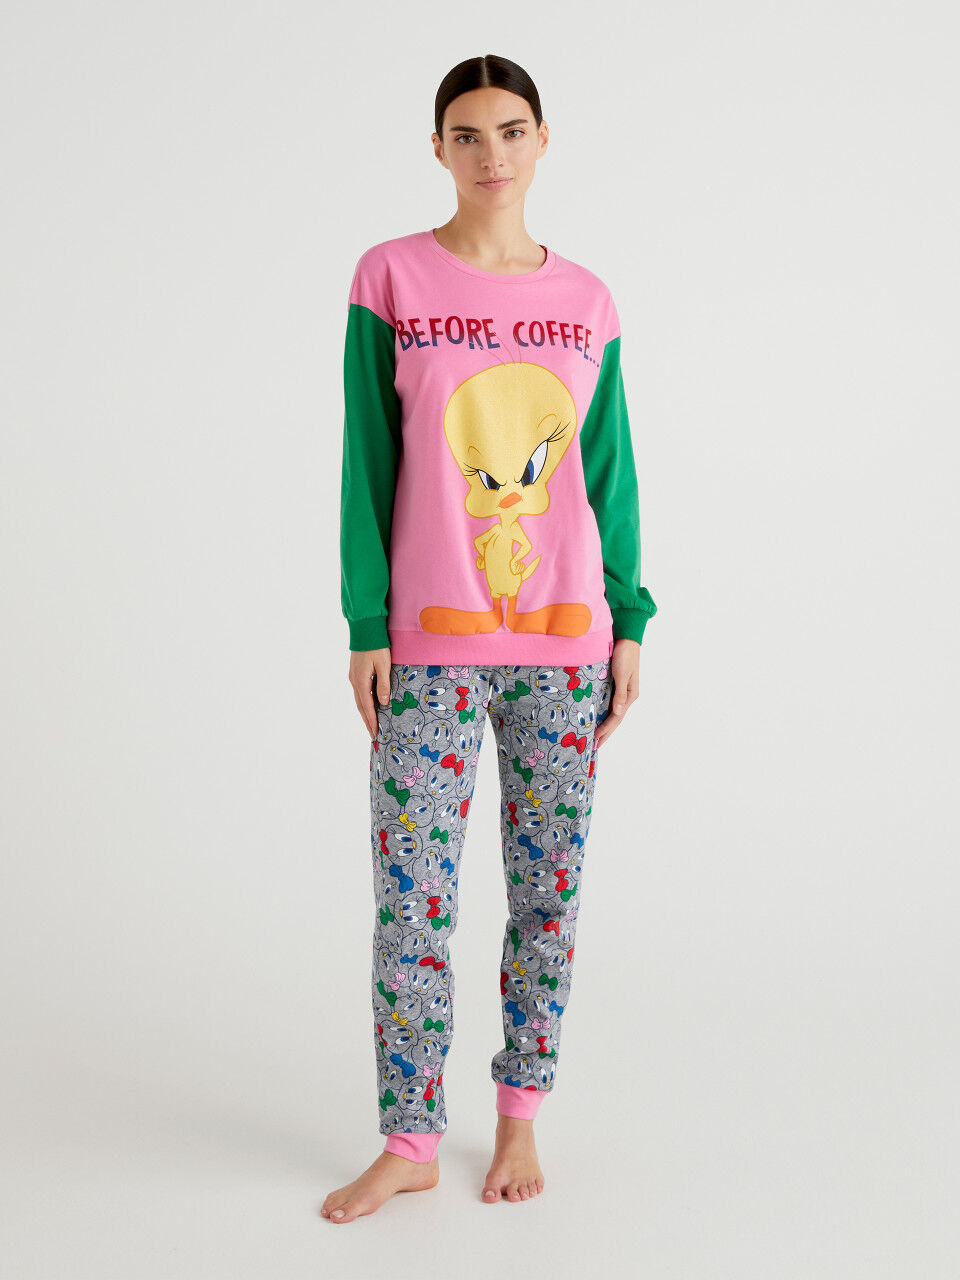 URMAGIC Ensemble de Pyjama bébé 2PCS Bébé Garçon Fille Coton Modèle de Dessin Animé Tops T-Shirt à Manches Longues+Pantalon Petits Enfants Vêtements de Nuit 